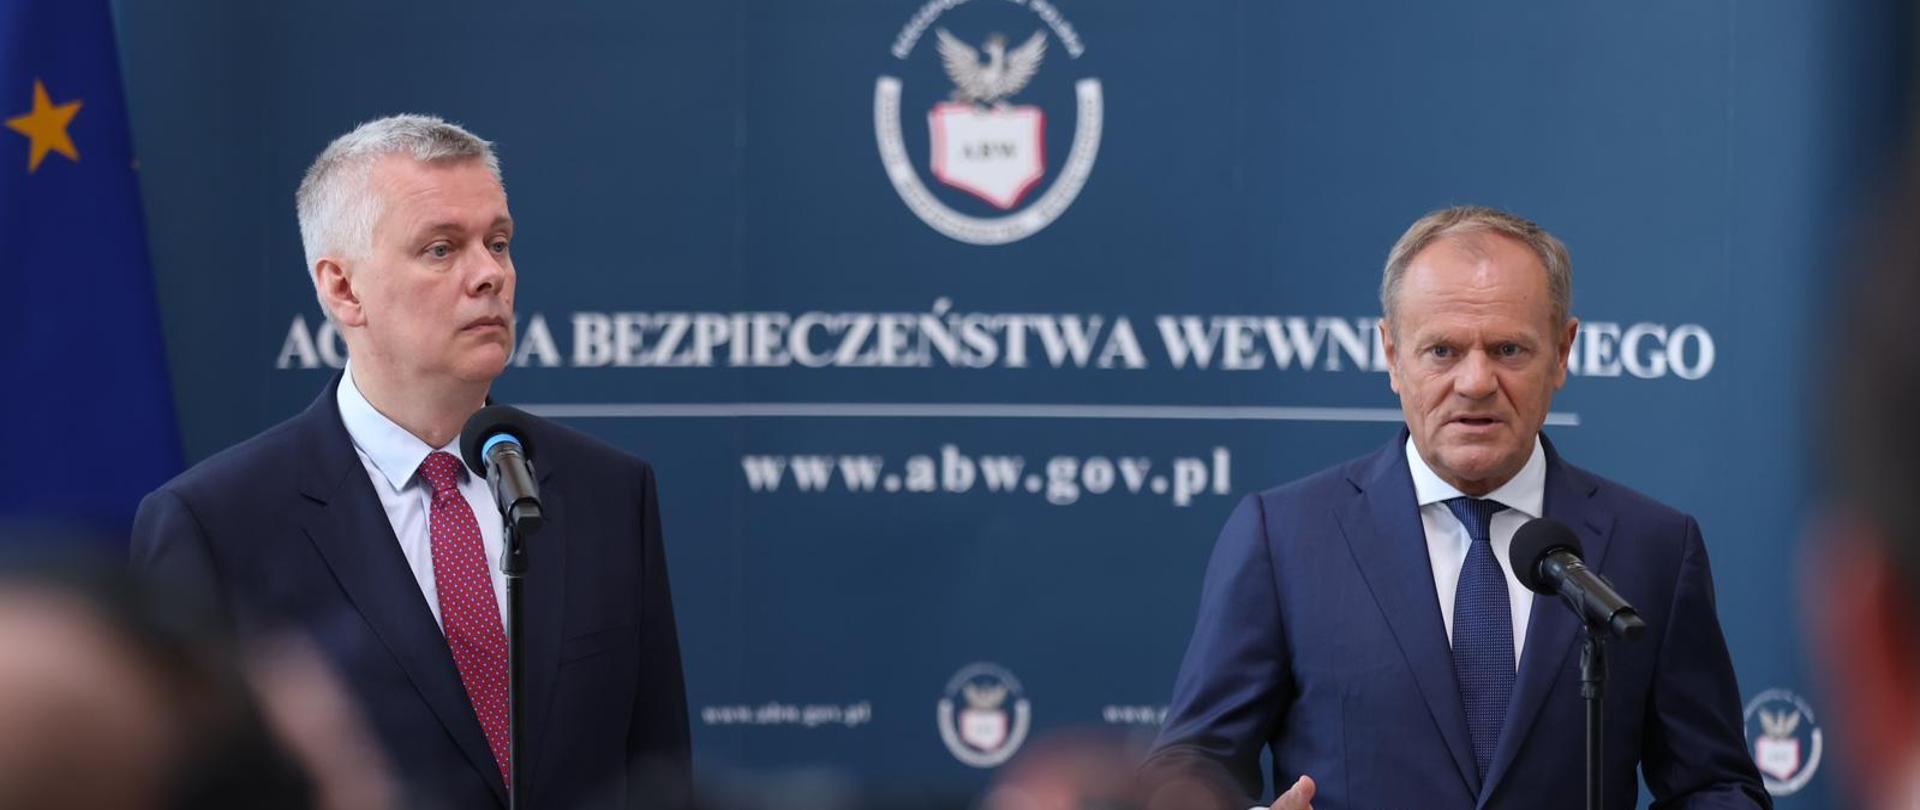 Premier Donald Tusk i Minister Spraw Wewnętrznych i Administracji na tle ścianki z logo ABW podczas konferencji prasowej